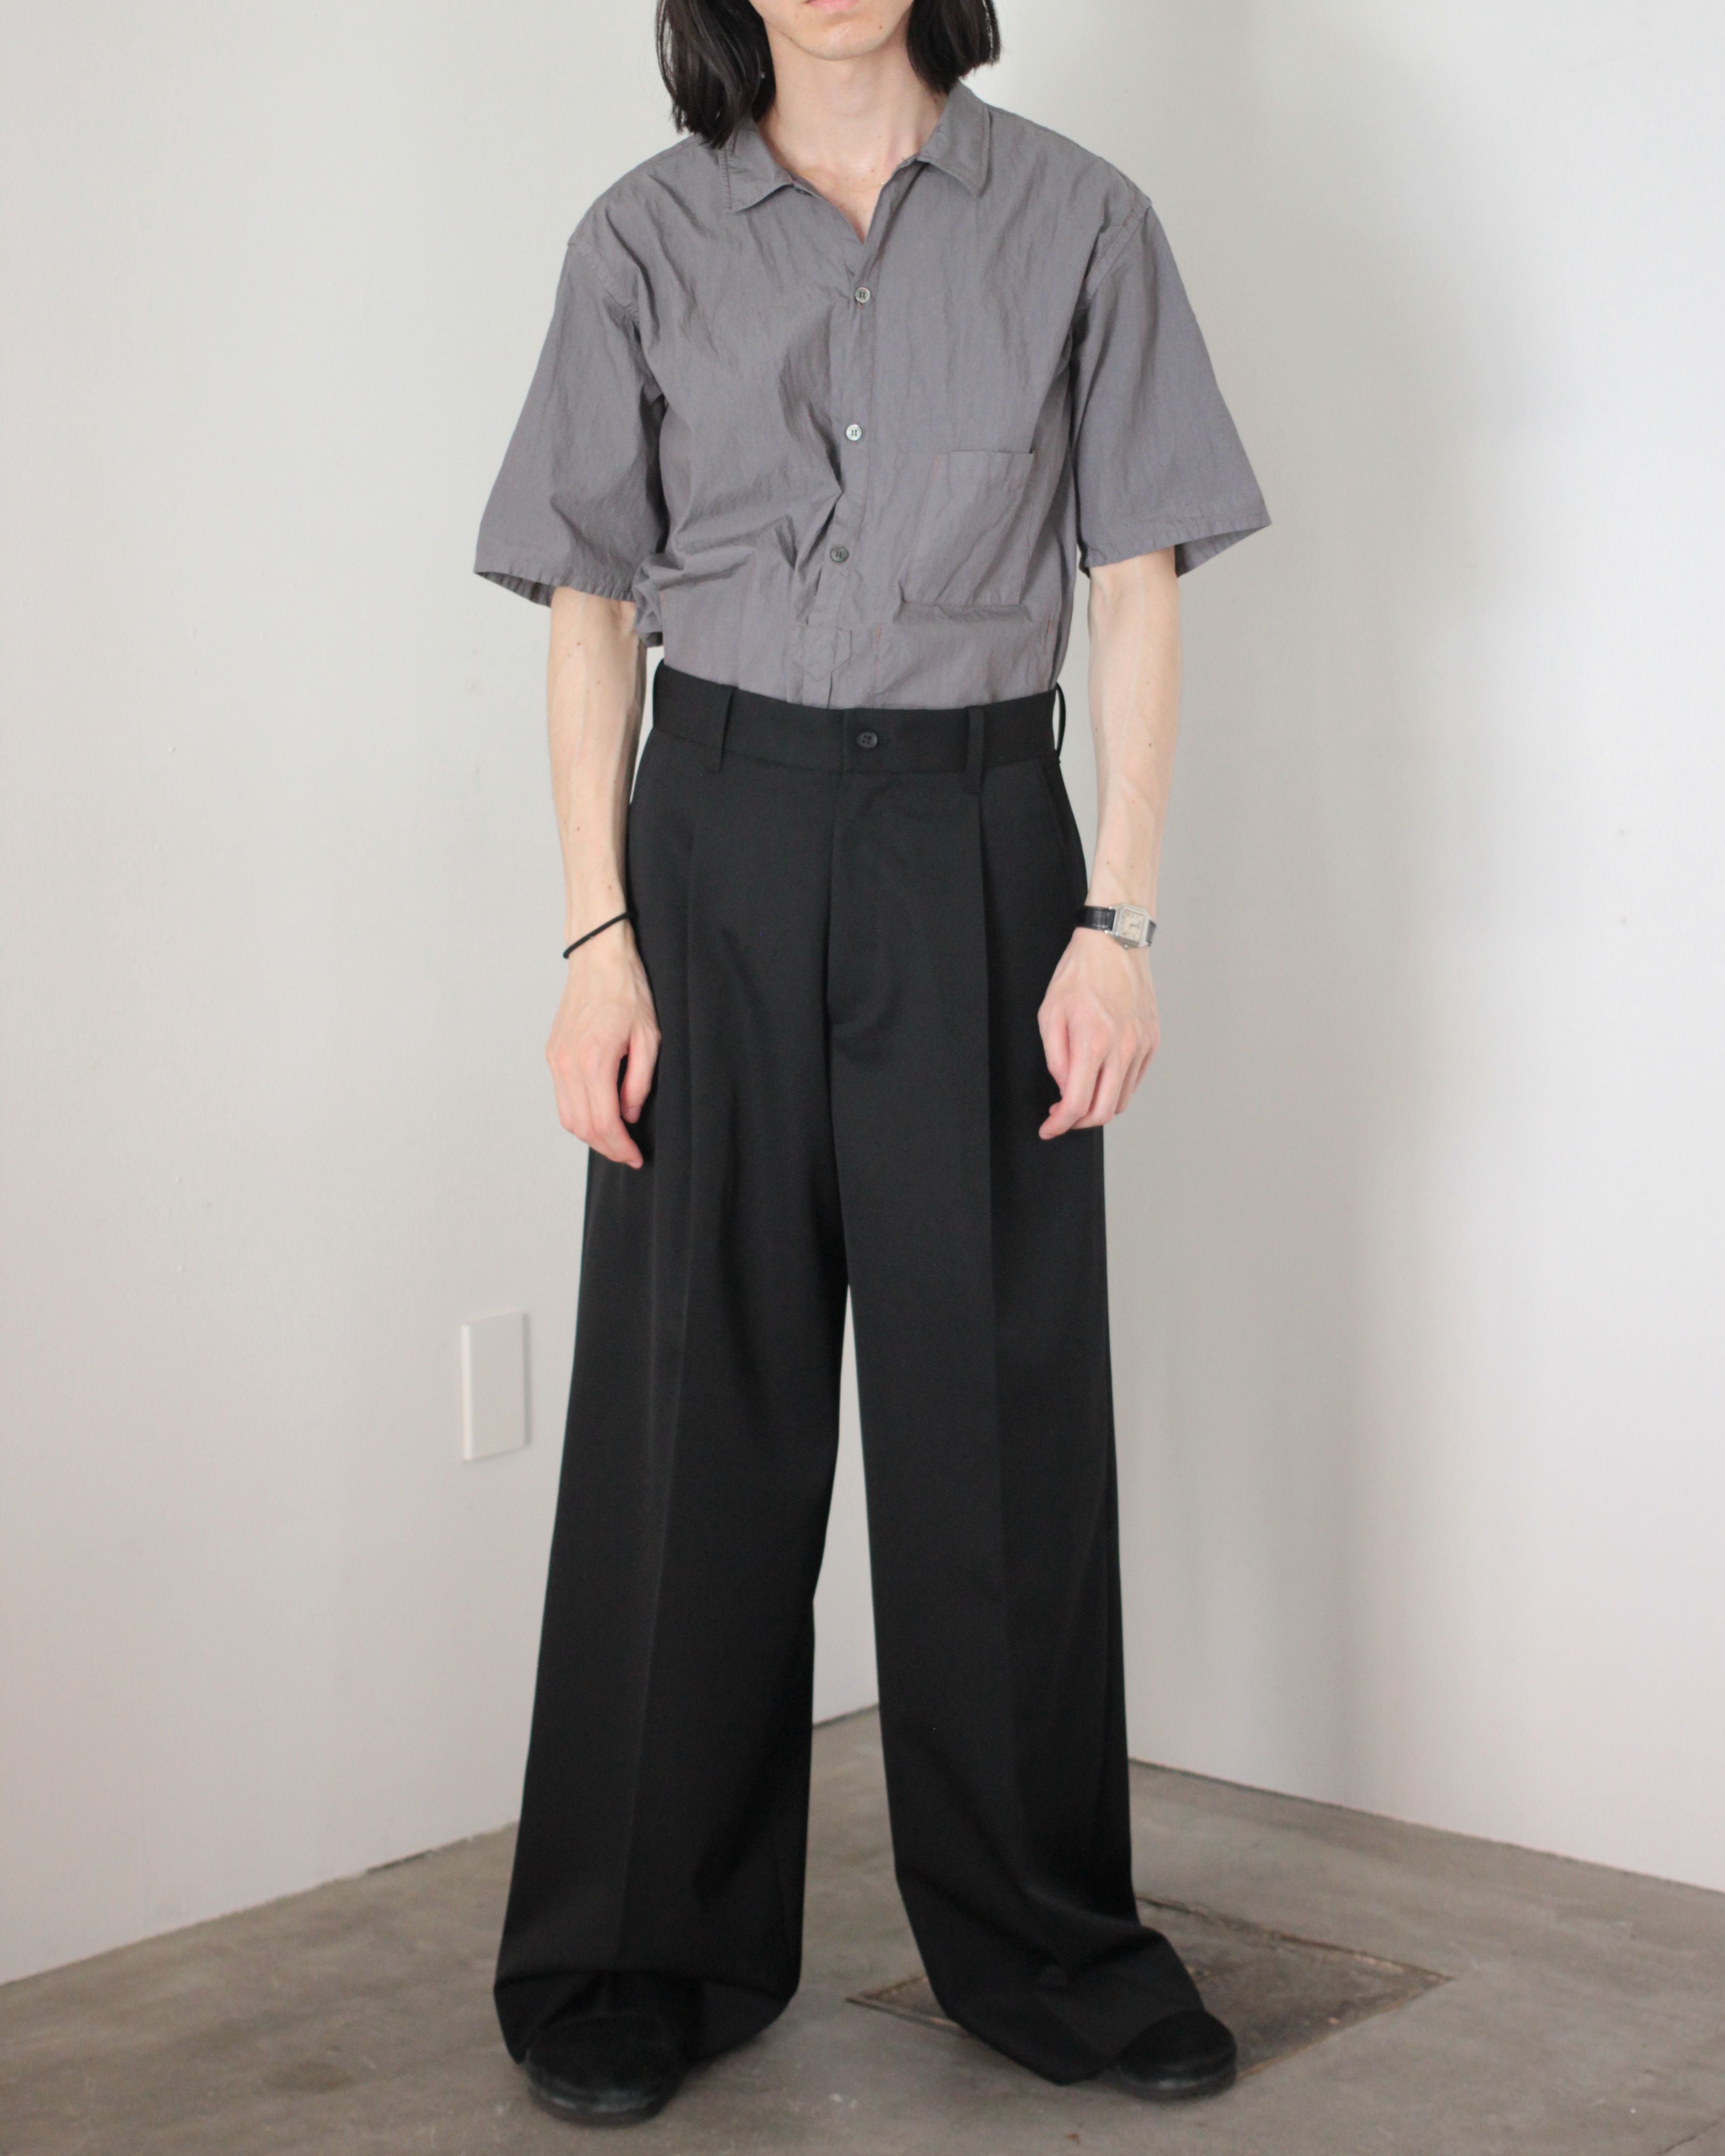 Buy Multicoloured Trousers  Pants for Women by VISIT WEAR Online  Ajiocom